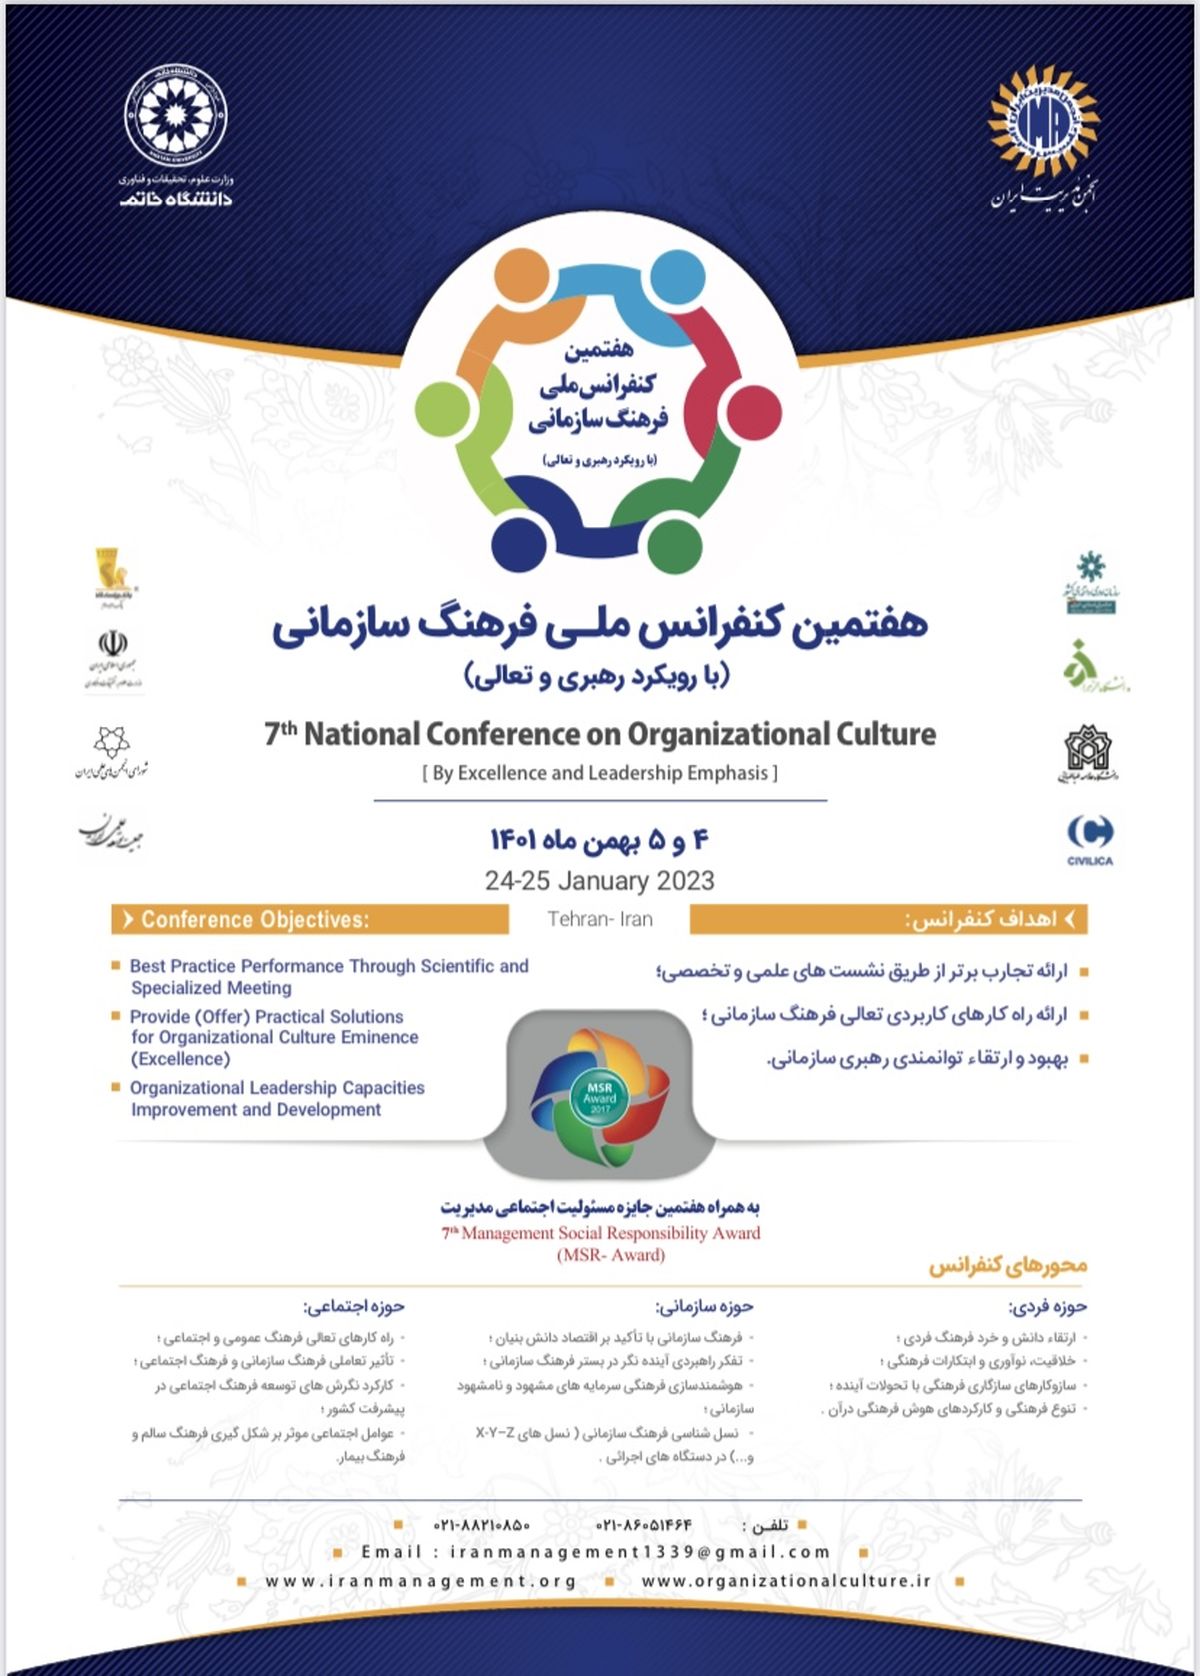 هفتمین کنفرانس ملی فرهنگ سازمانی با رویکرد رهبری و تعالی